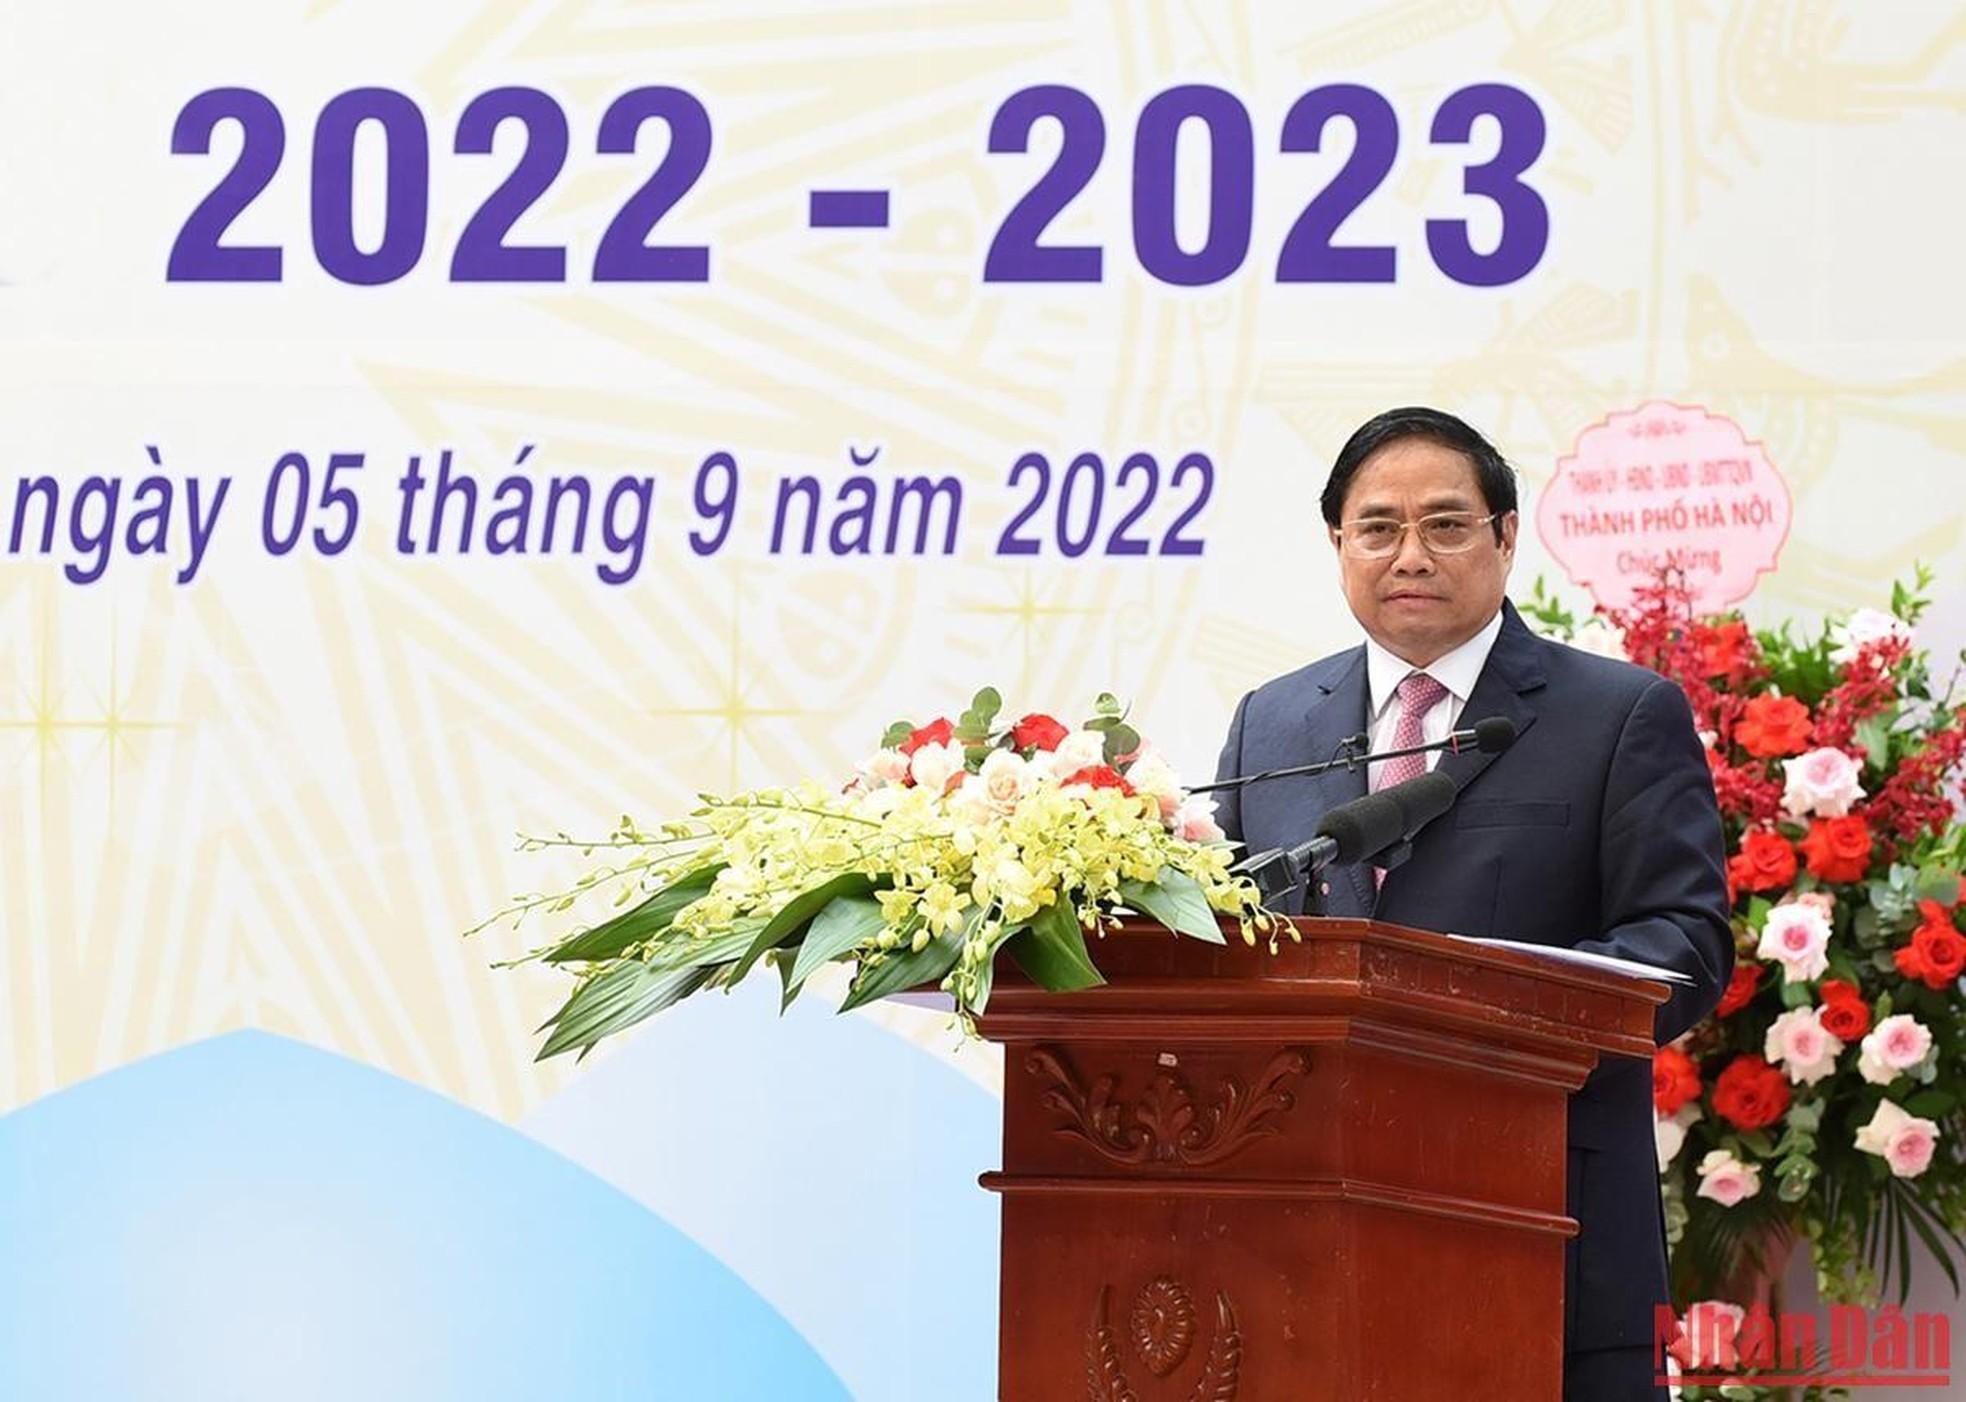 El primer ministro Pham Minh Chinh da sus palabras. (Fotografía: Nhan Dan)